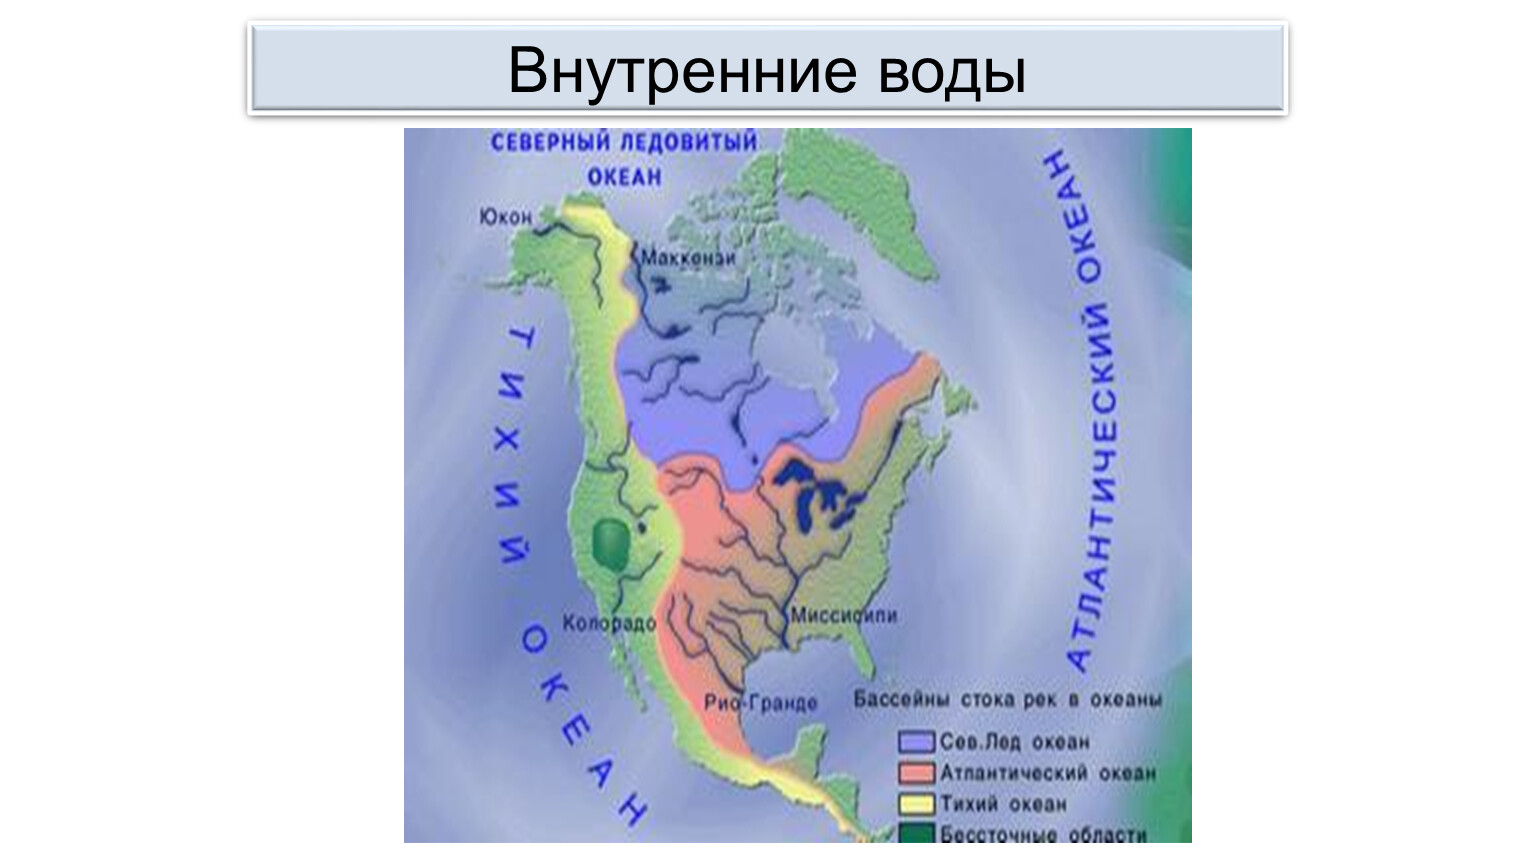 Внутренние воды Северной Америки на карте